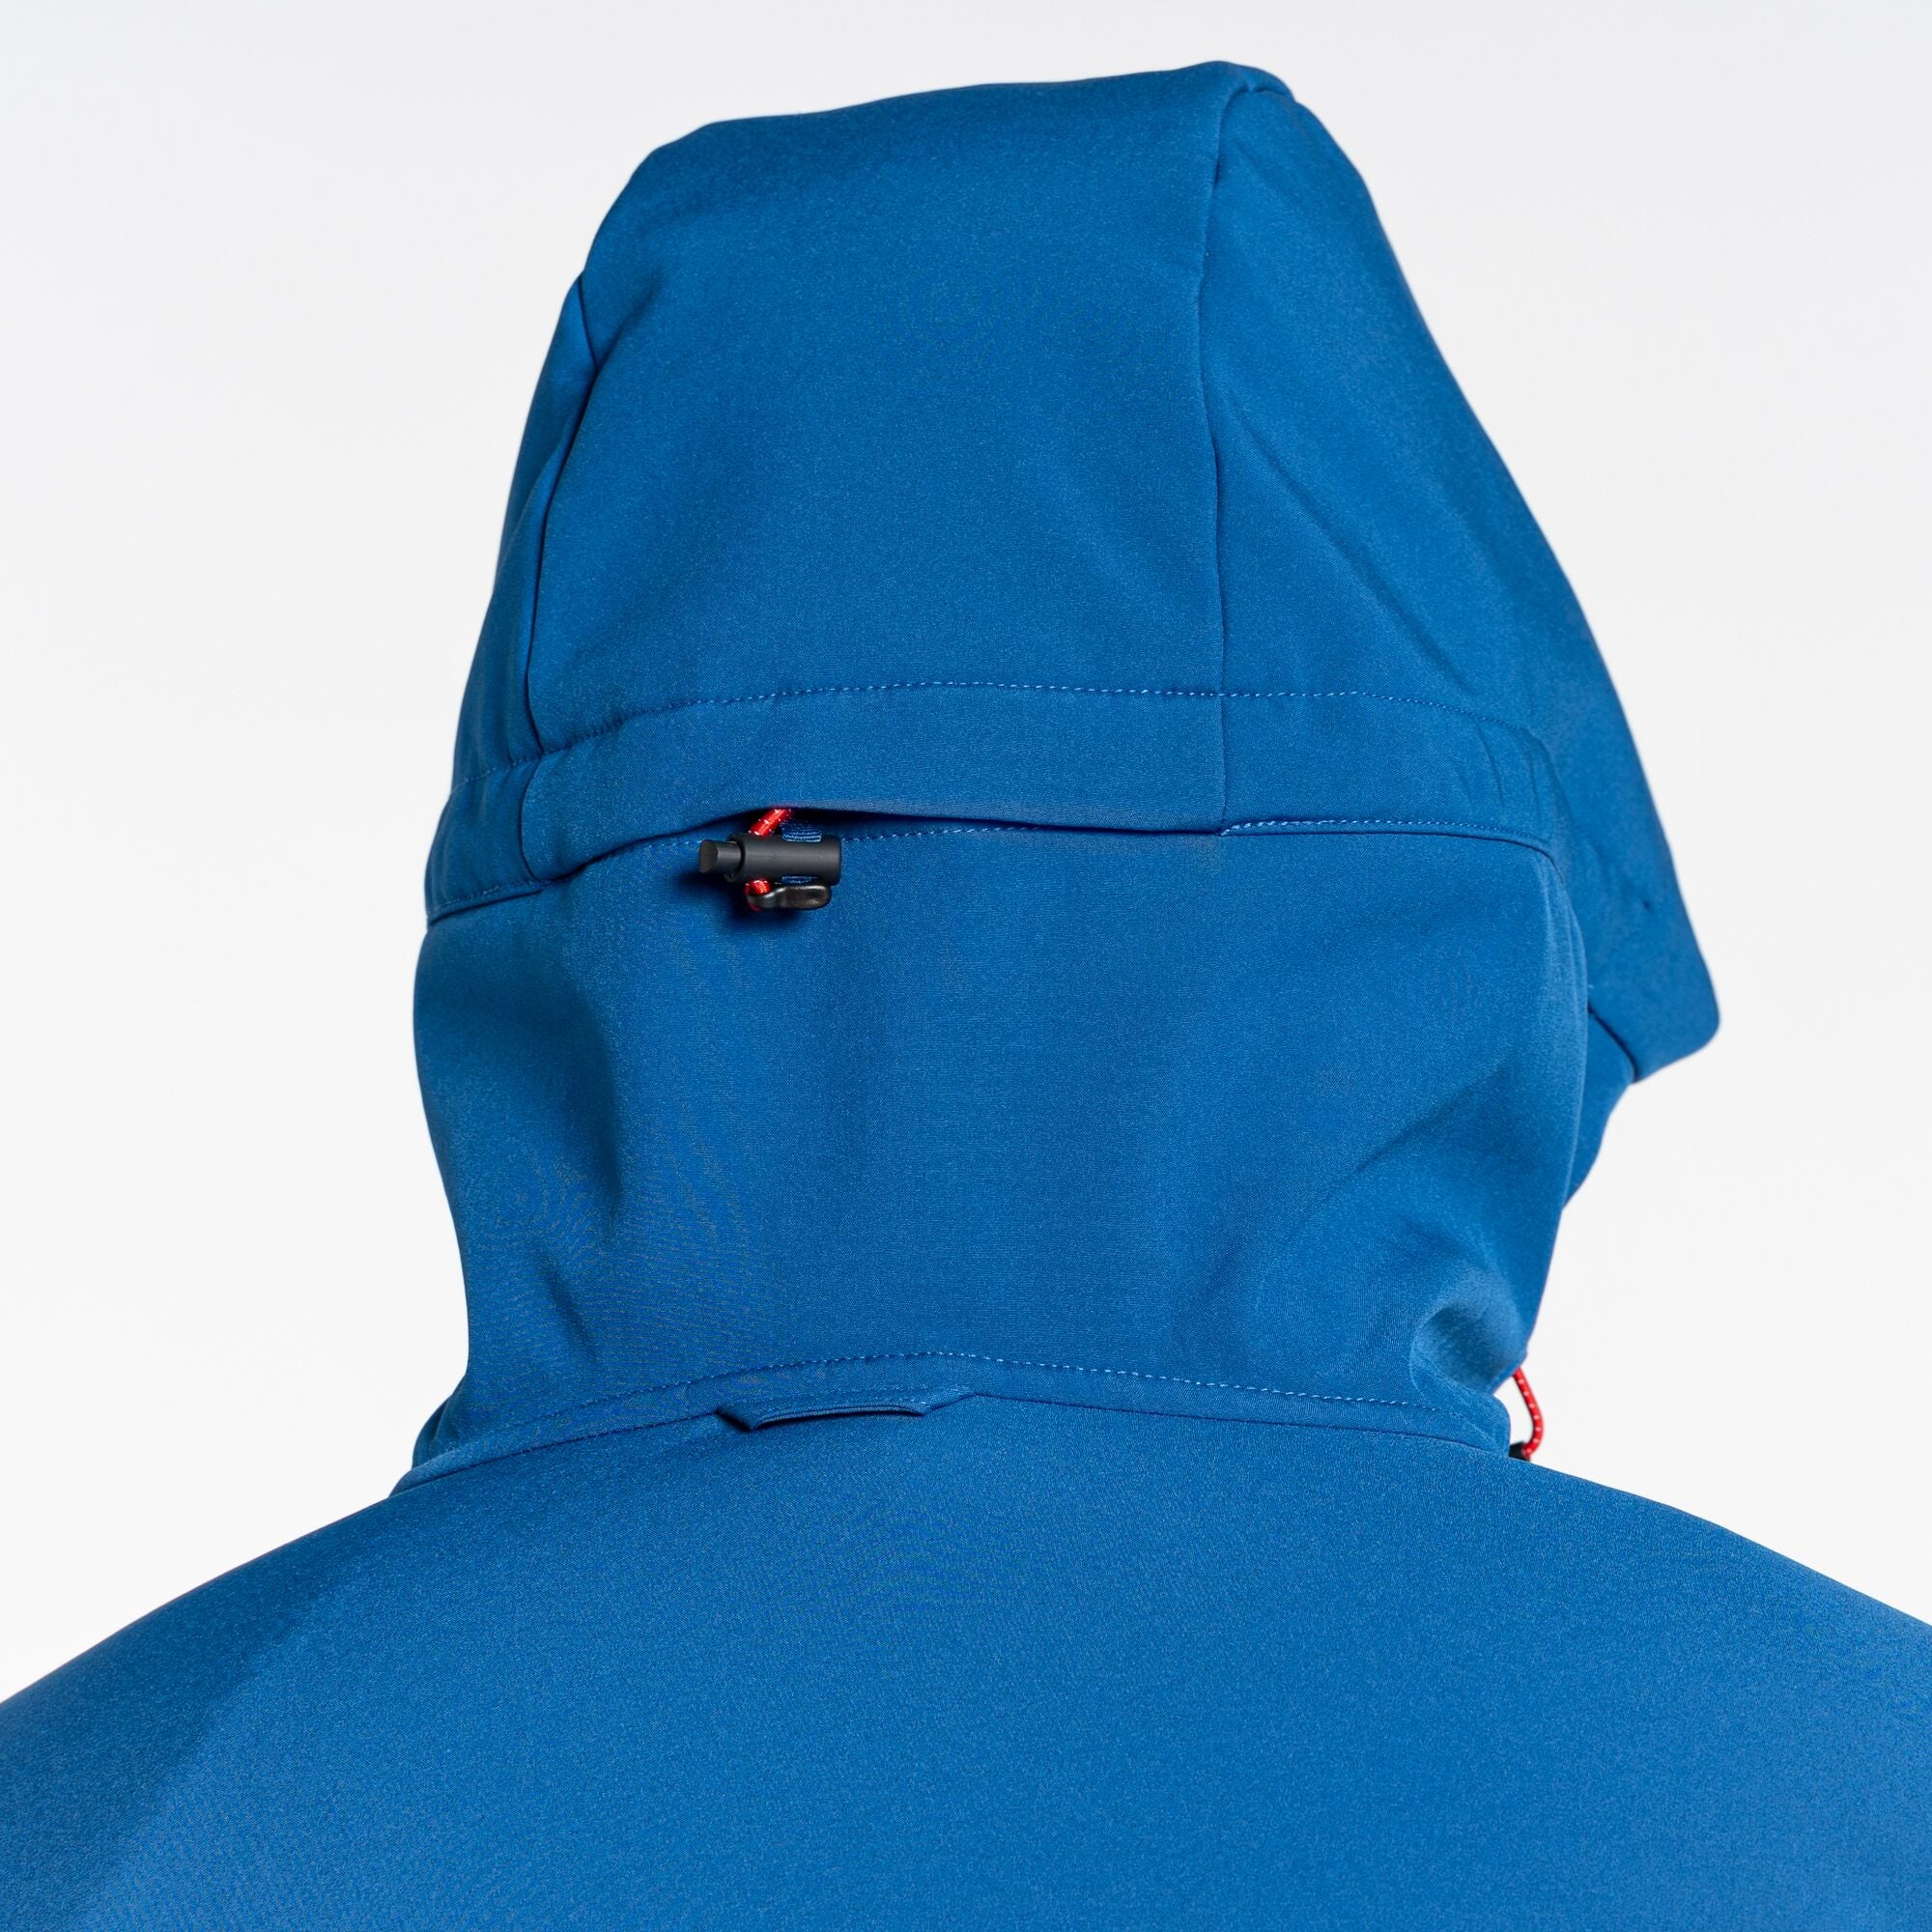 Men's Tripp Hooded Jacket | Poseidon Blue